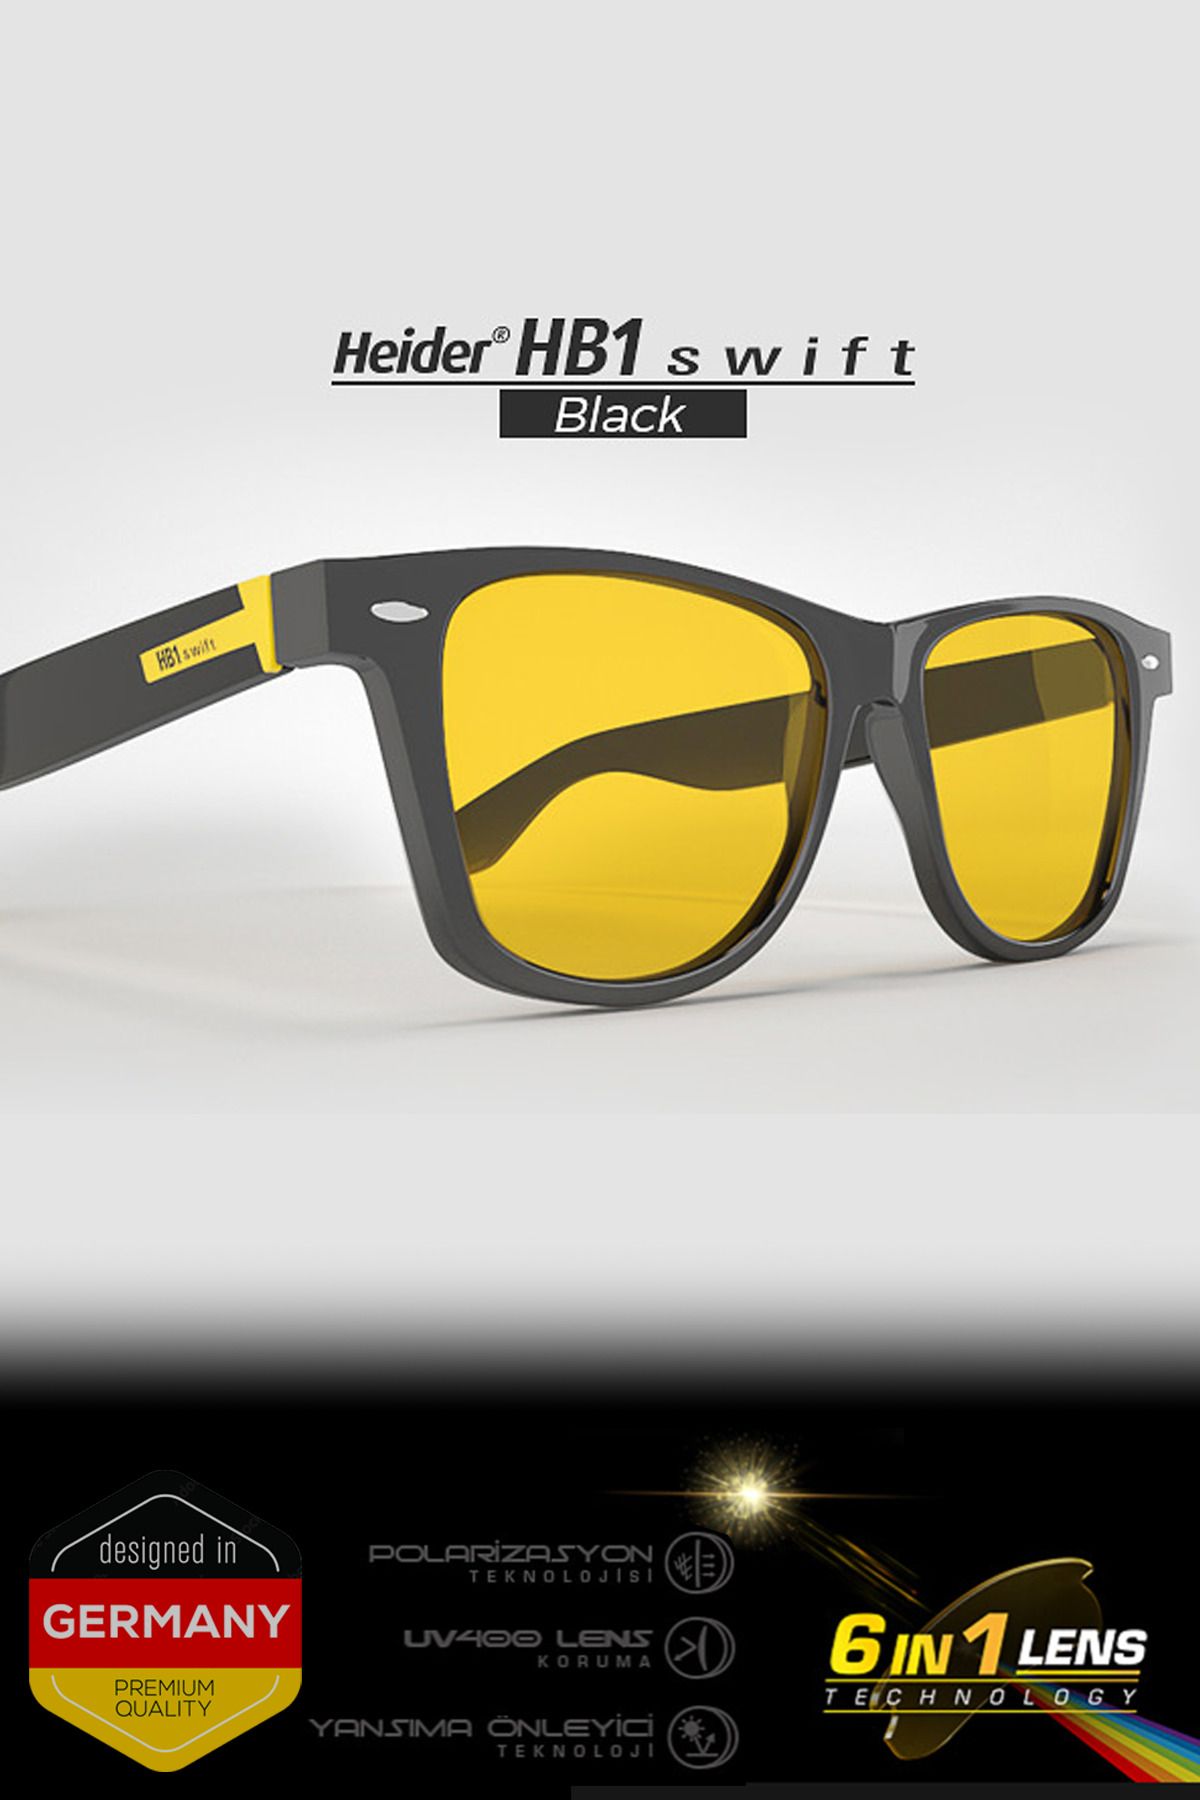 Heider Hb1 Swift Siyah Kasa Anti-glare Gece-gündüz Sürüş Gözlüğü - 6 Filtreli - Mavi Işık Korumalı